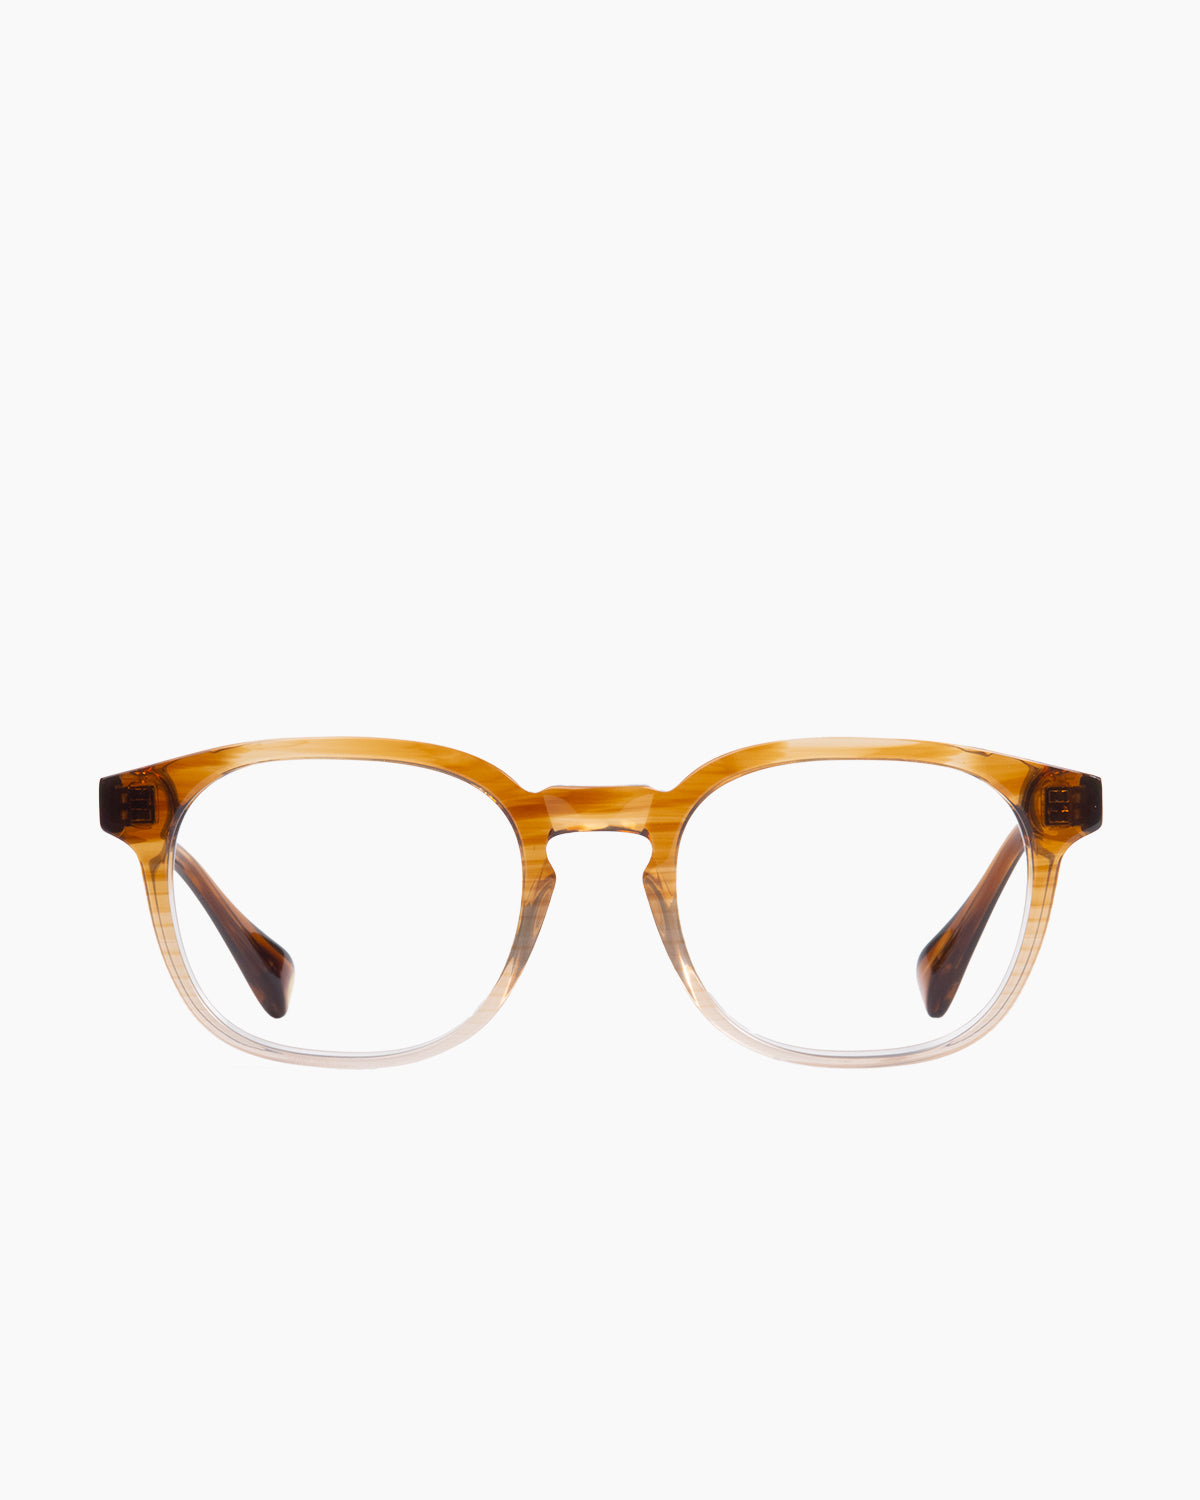 Francois Pinton - Haussmann8 - Me | glasses bar:  Marie-Sophie Dion